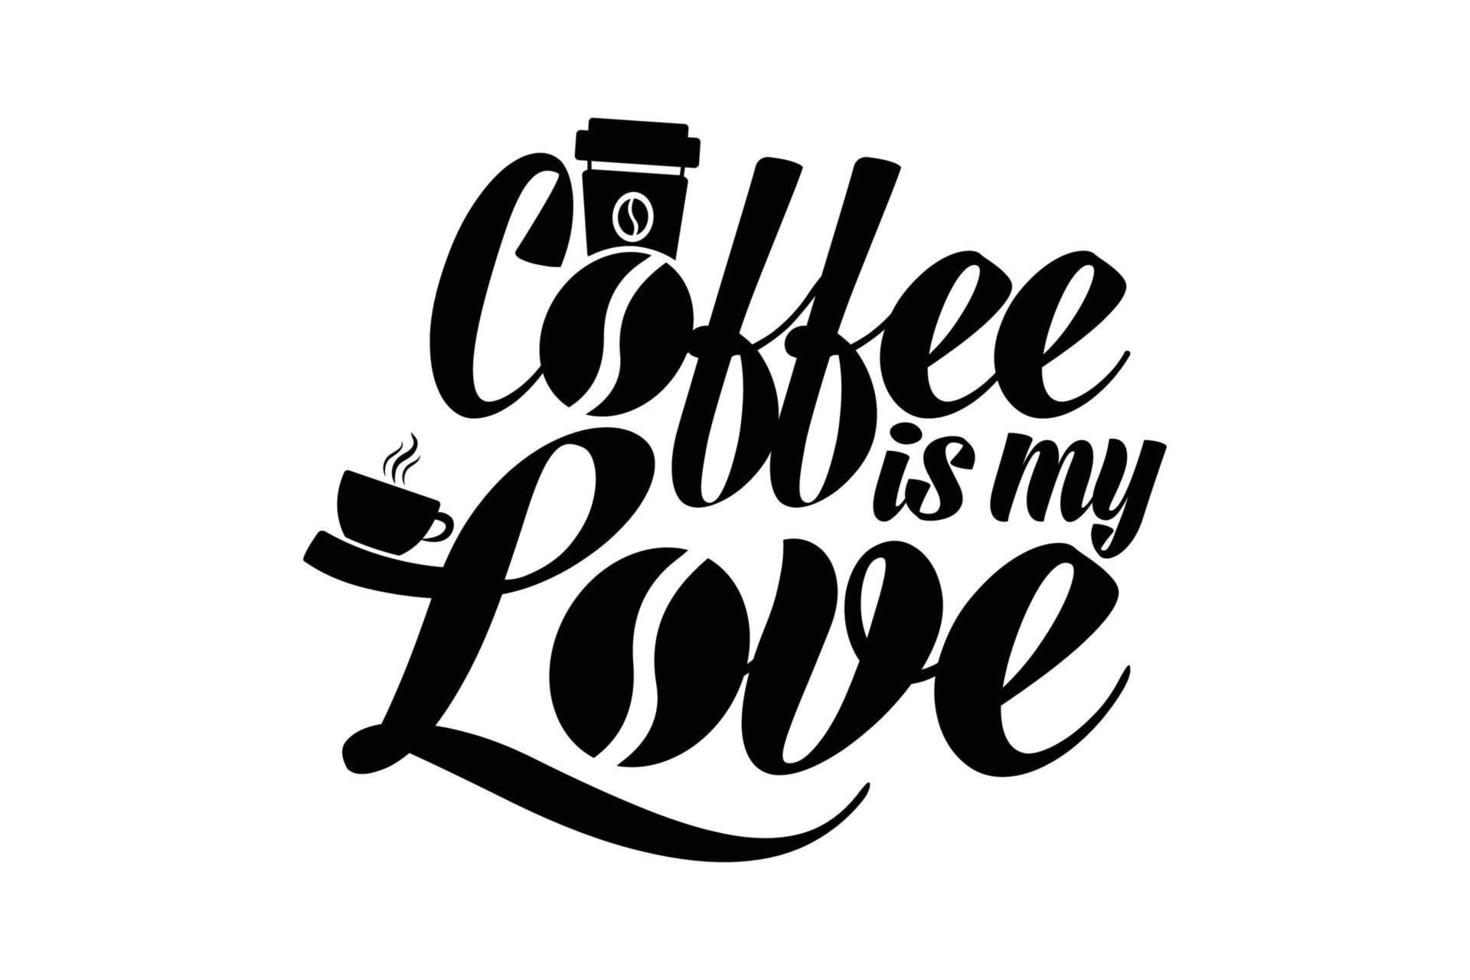 kaffe är min kärlek. t-shirt design citat om hobbyer och dricka kaffe och te vektor